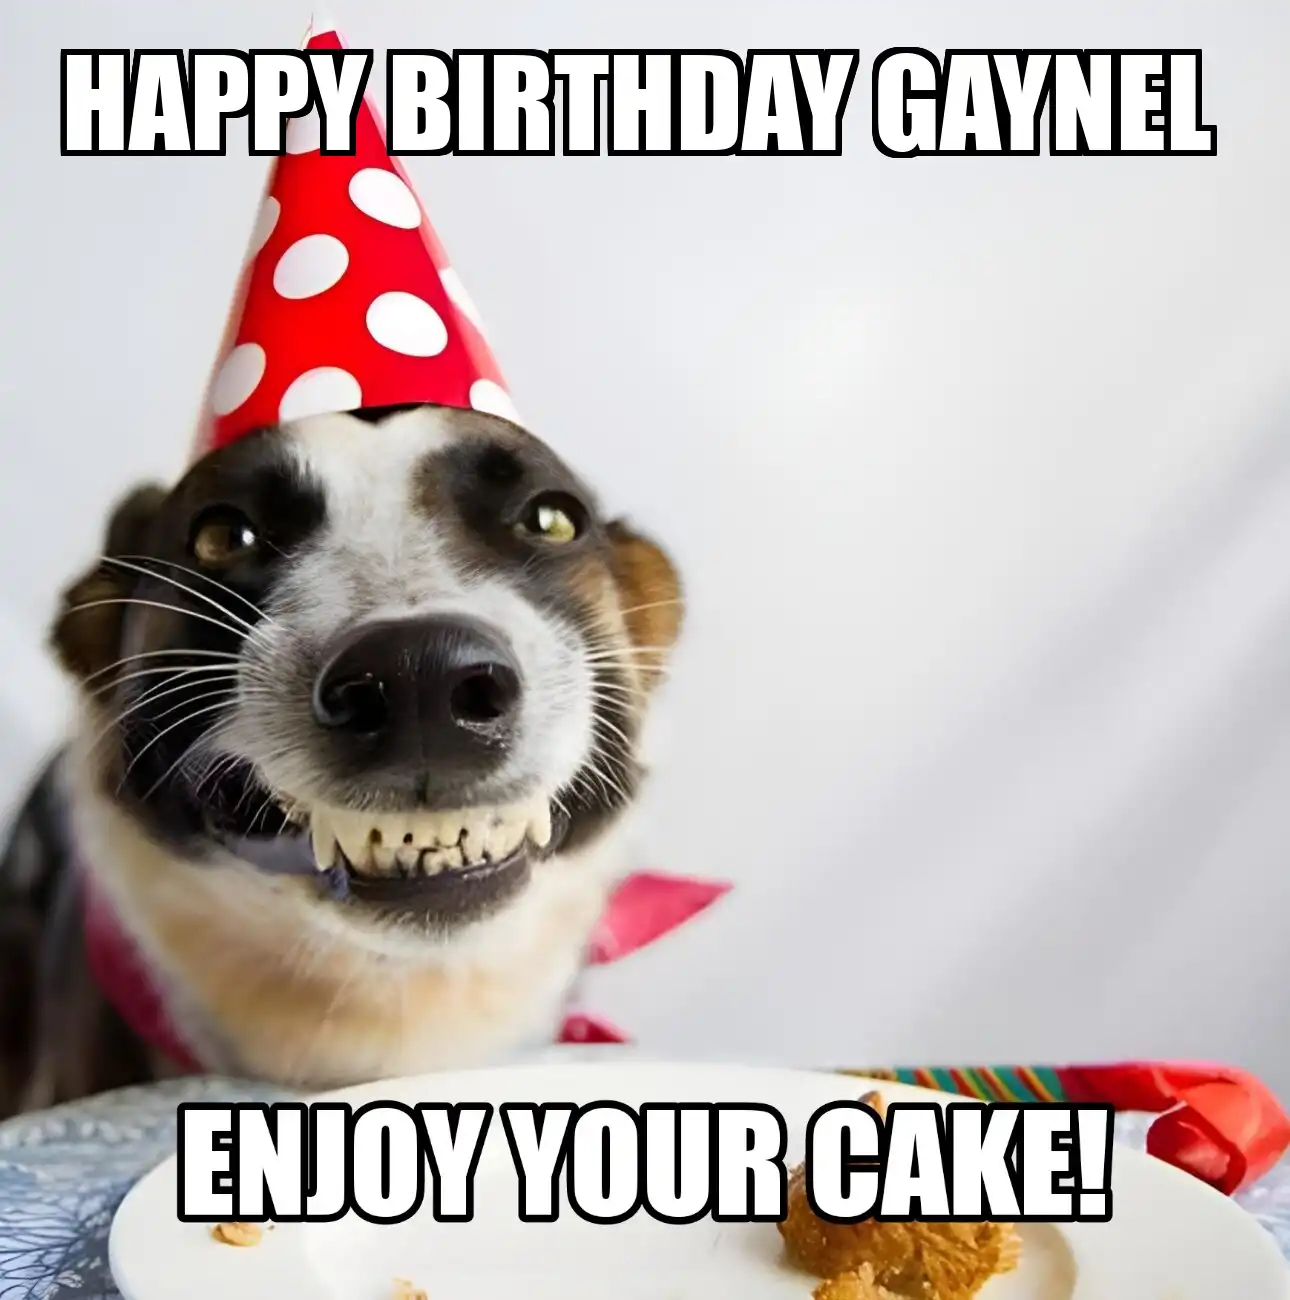 Happy Birthday Gaynel Enjoy Your Cake Dog Meme